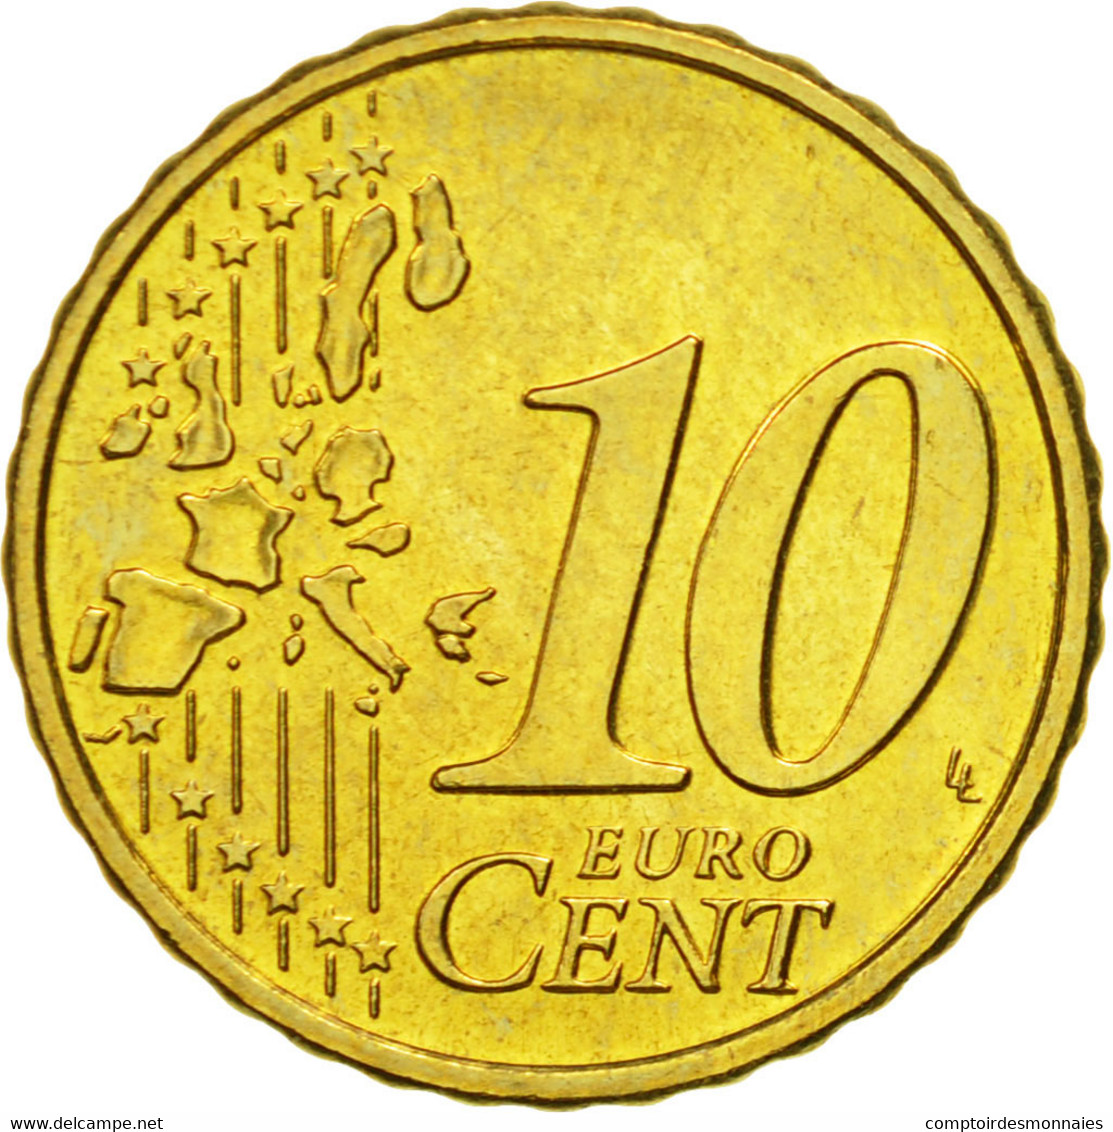 Autriche, 10 Euro Cent, 2002, FDC, Laiton, KM:3085 - Autriche